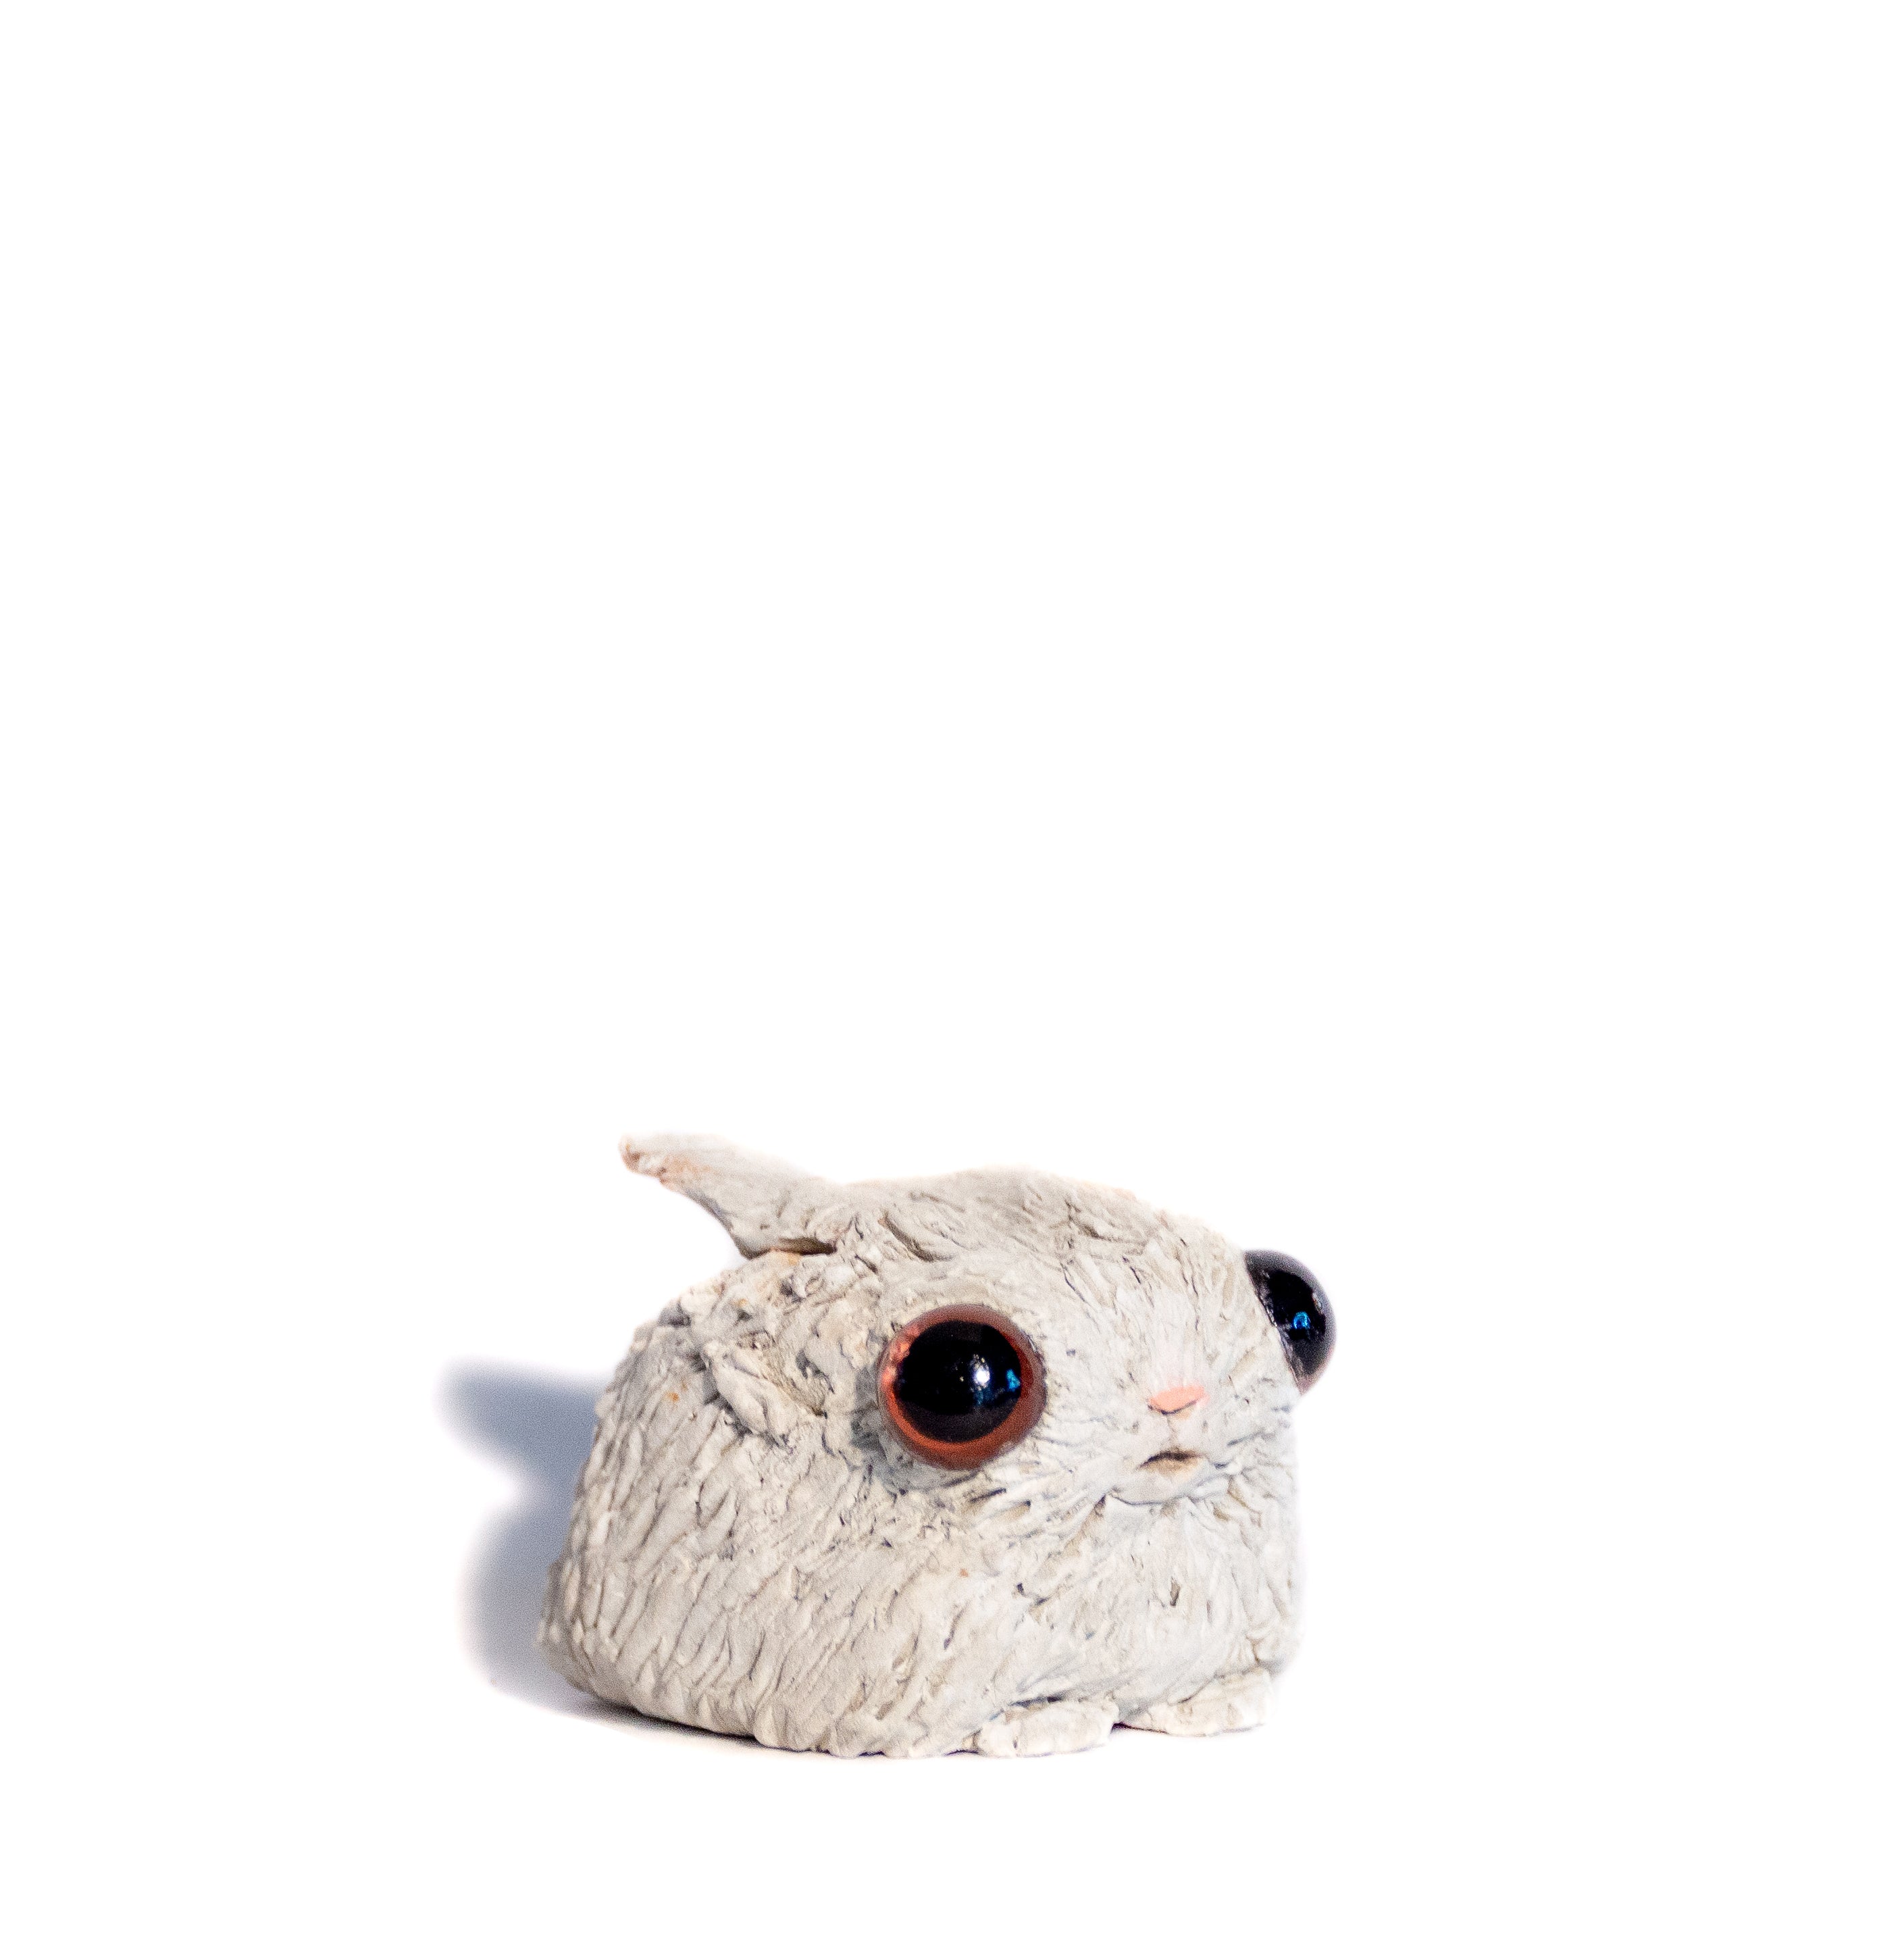 clay bunny "lyle" by Emma Lee Fleury